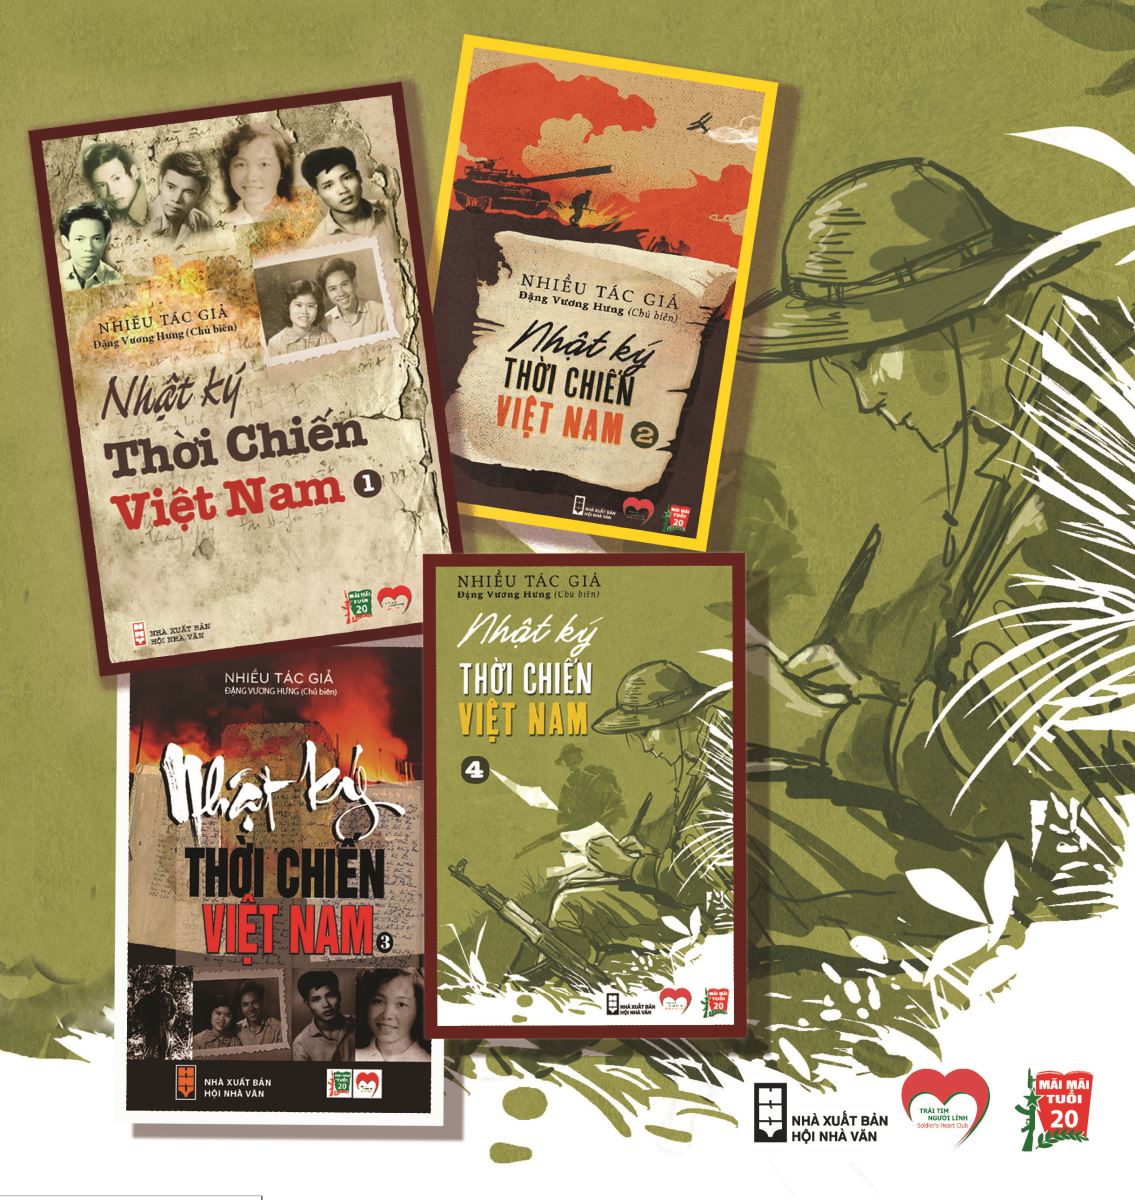   Bộ sách “Nhật ký thời chiến Việt Nam” của nhiều tác giả. Ảnh: NVCC